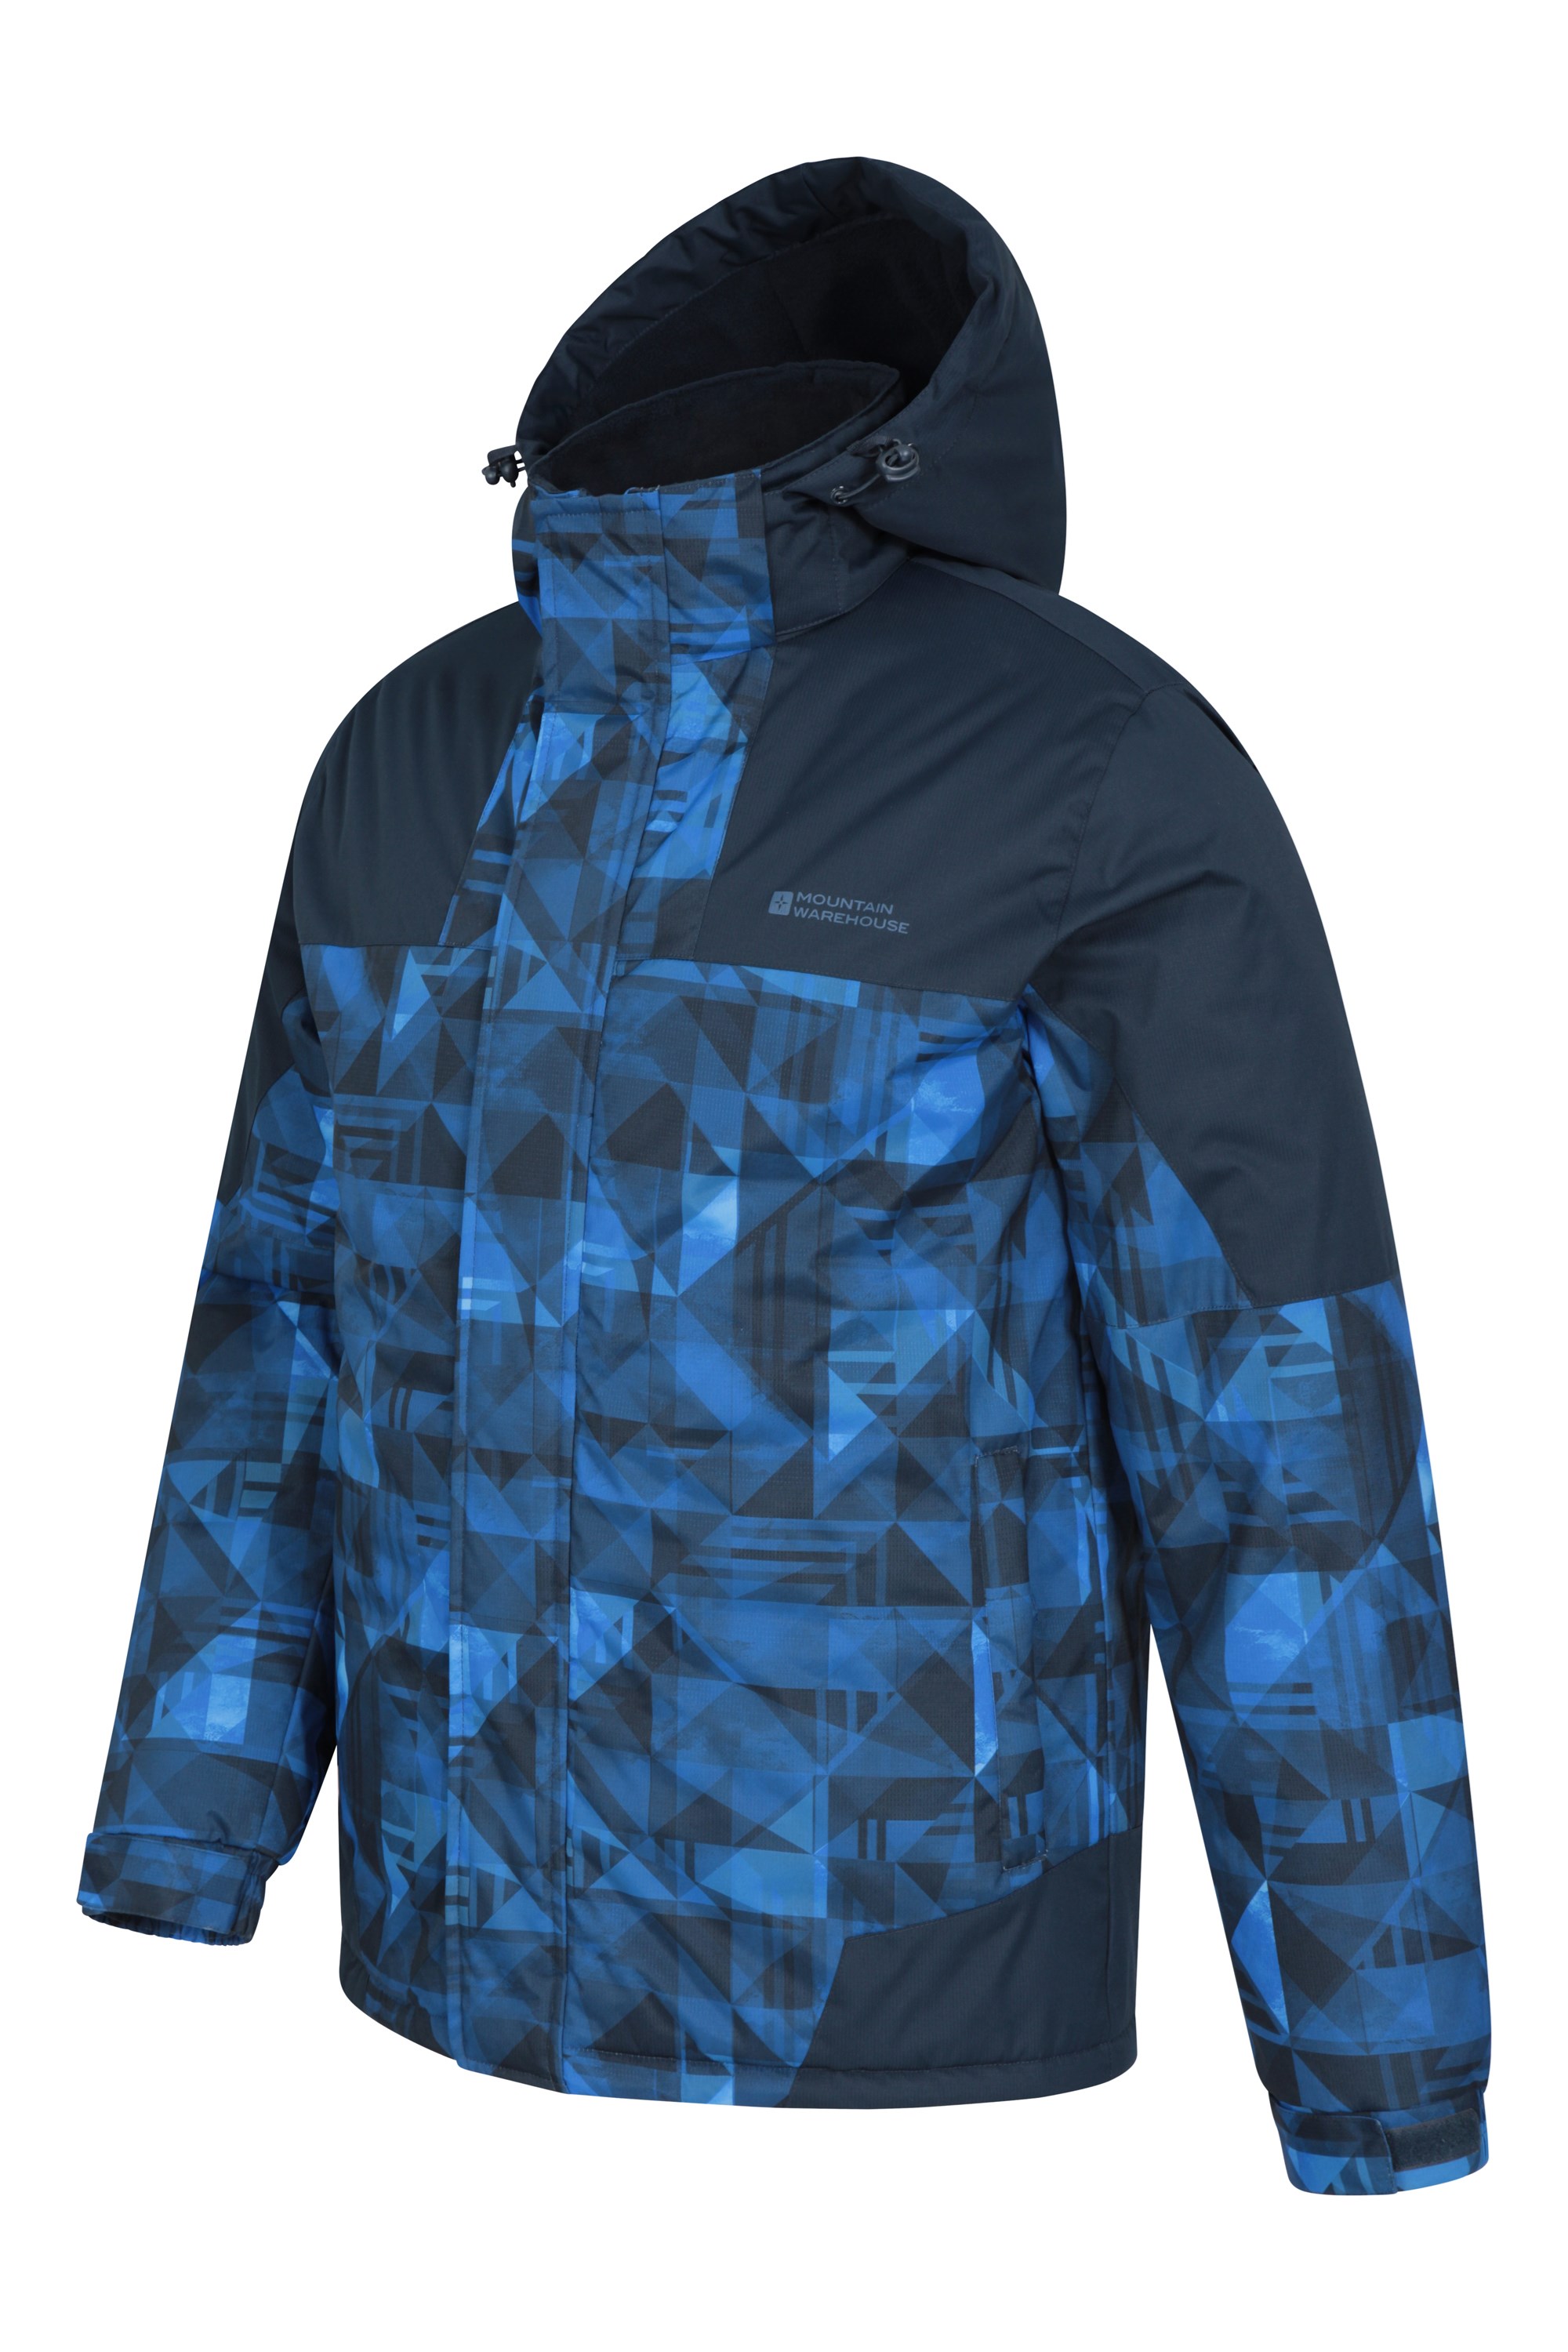 Mountain Warehouse Shadow Mens Printed Ski Jacket Warm Snow Jacket